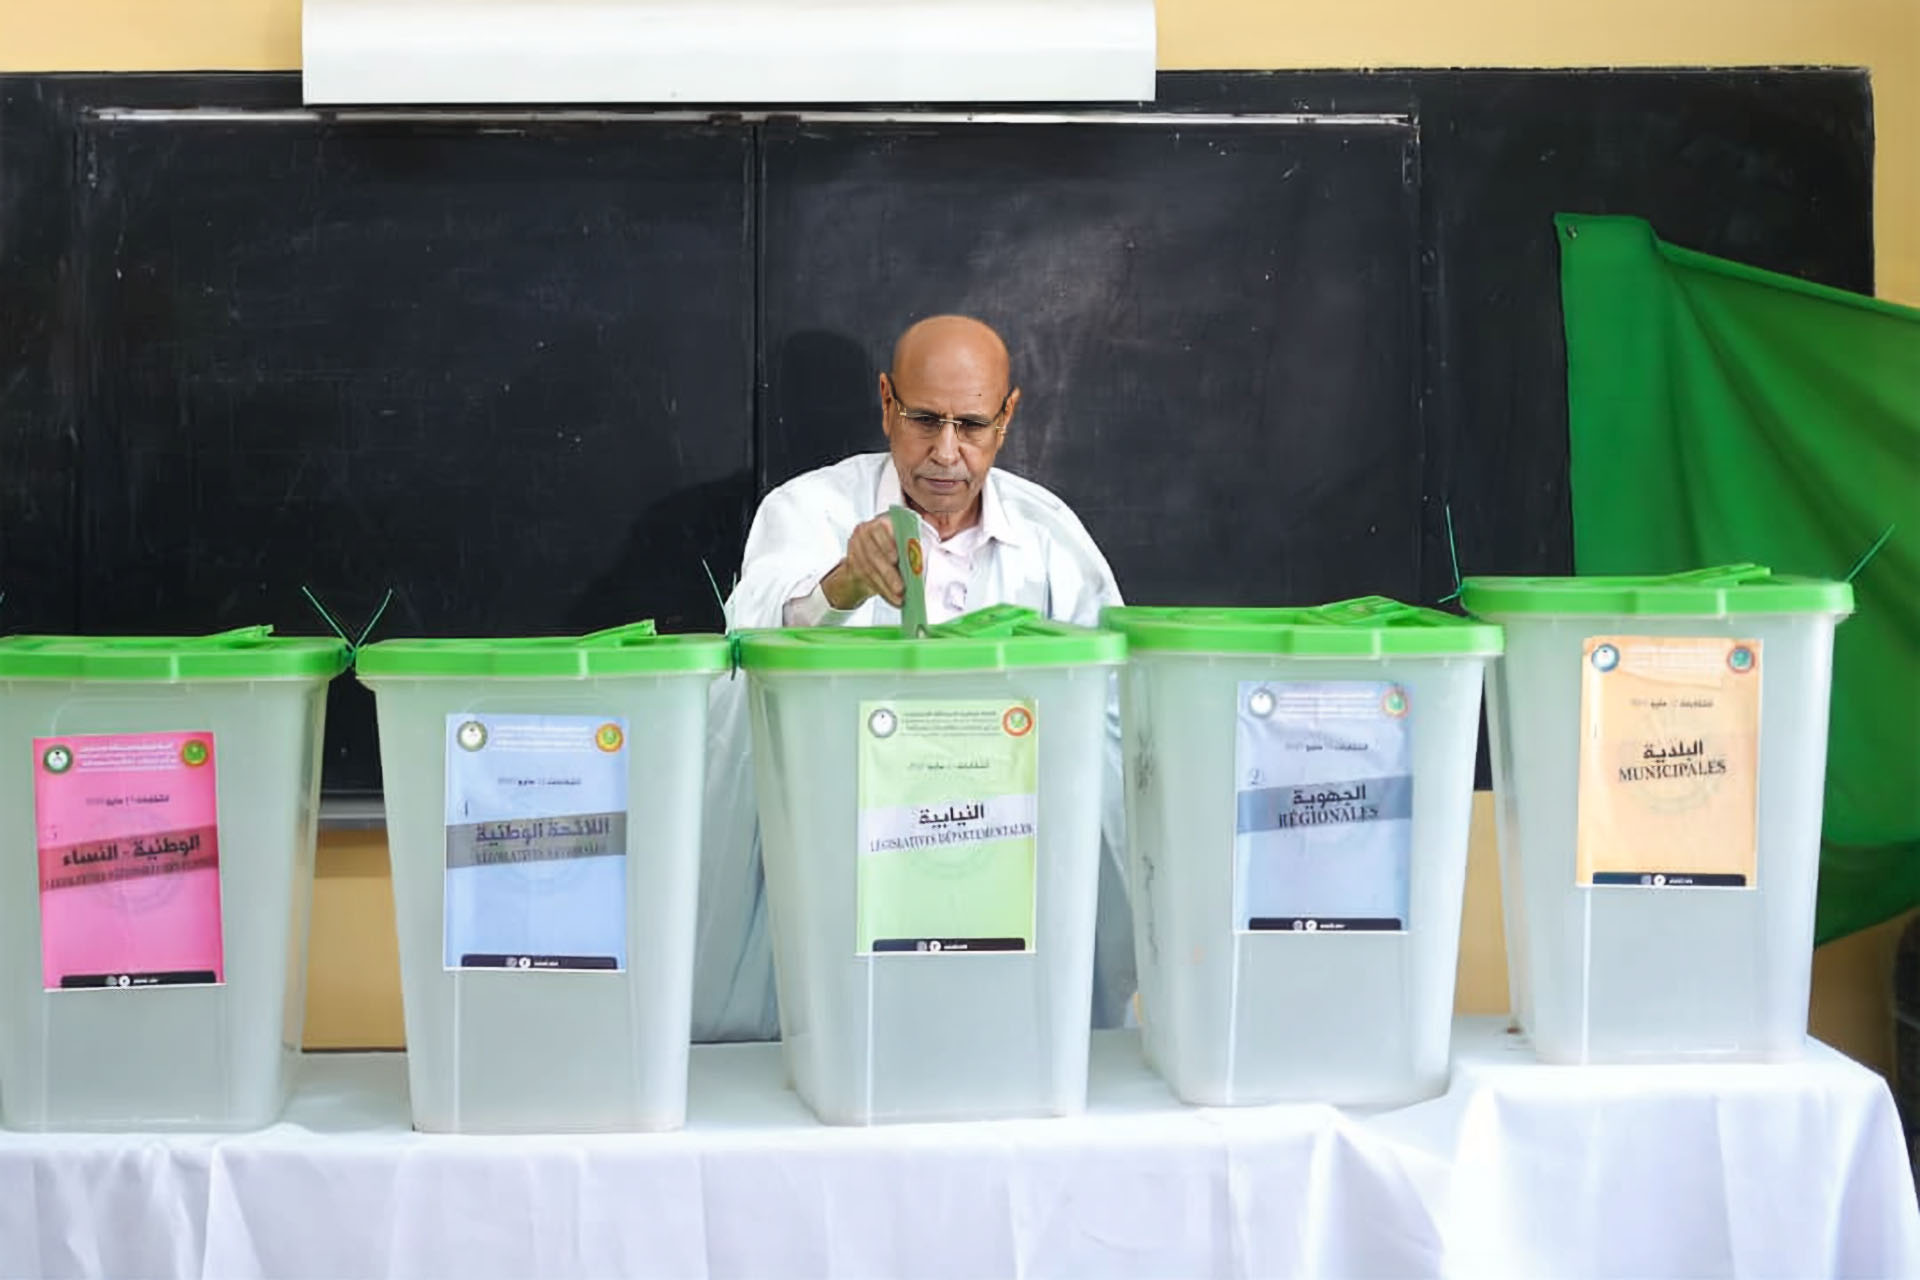 انتخابات موريتانيا الرئاسية.. قراءة في حظوظ المرشحين وخلفياتهم | سياسة – البوكس نيوز